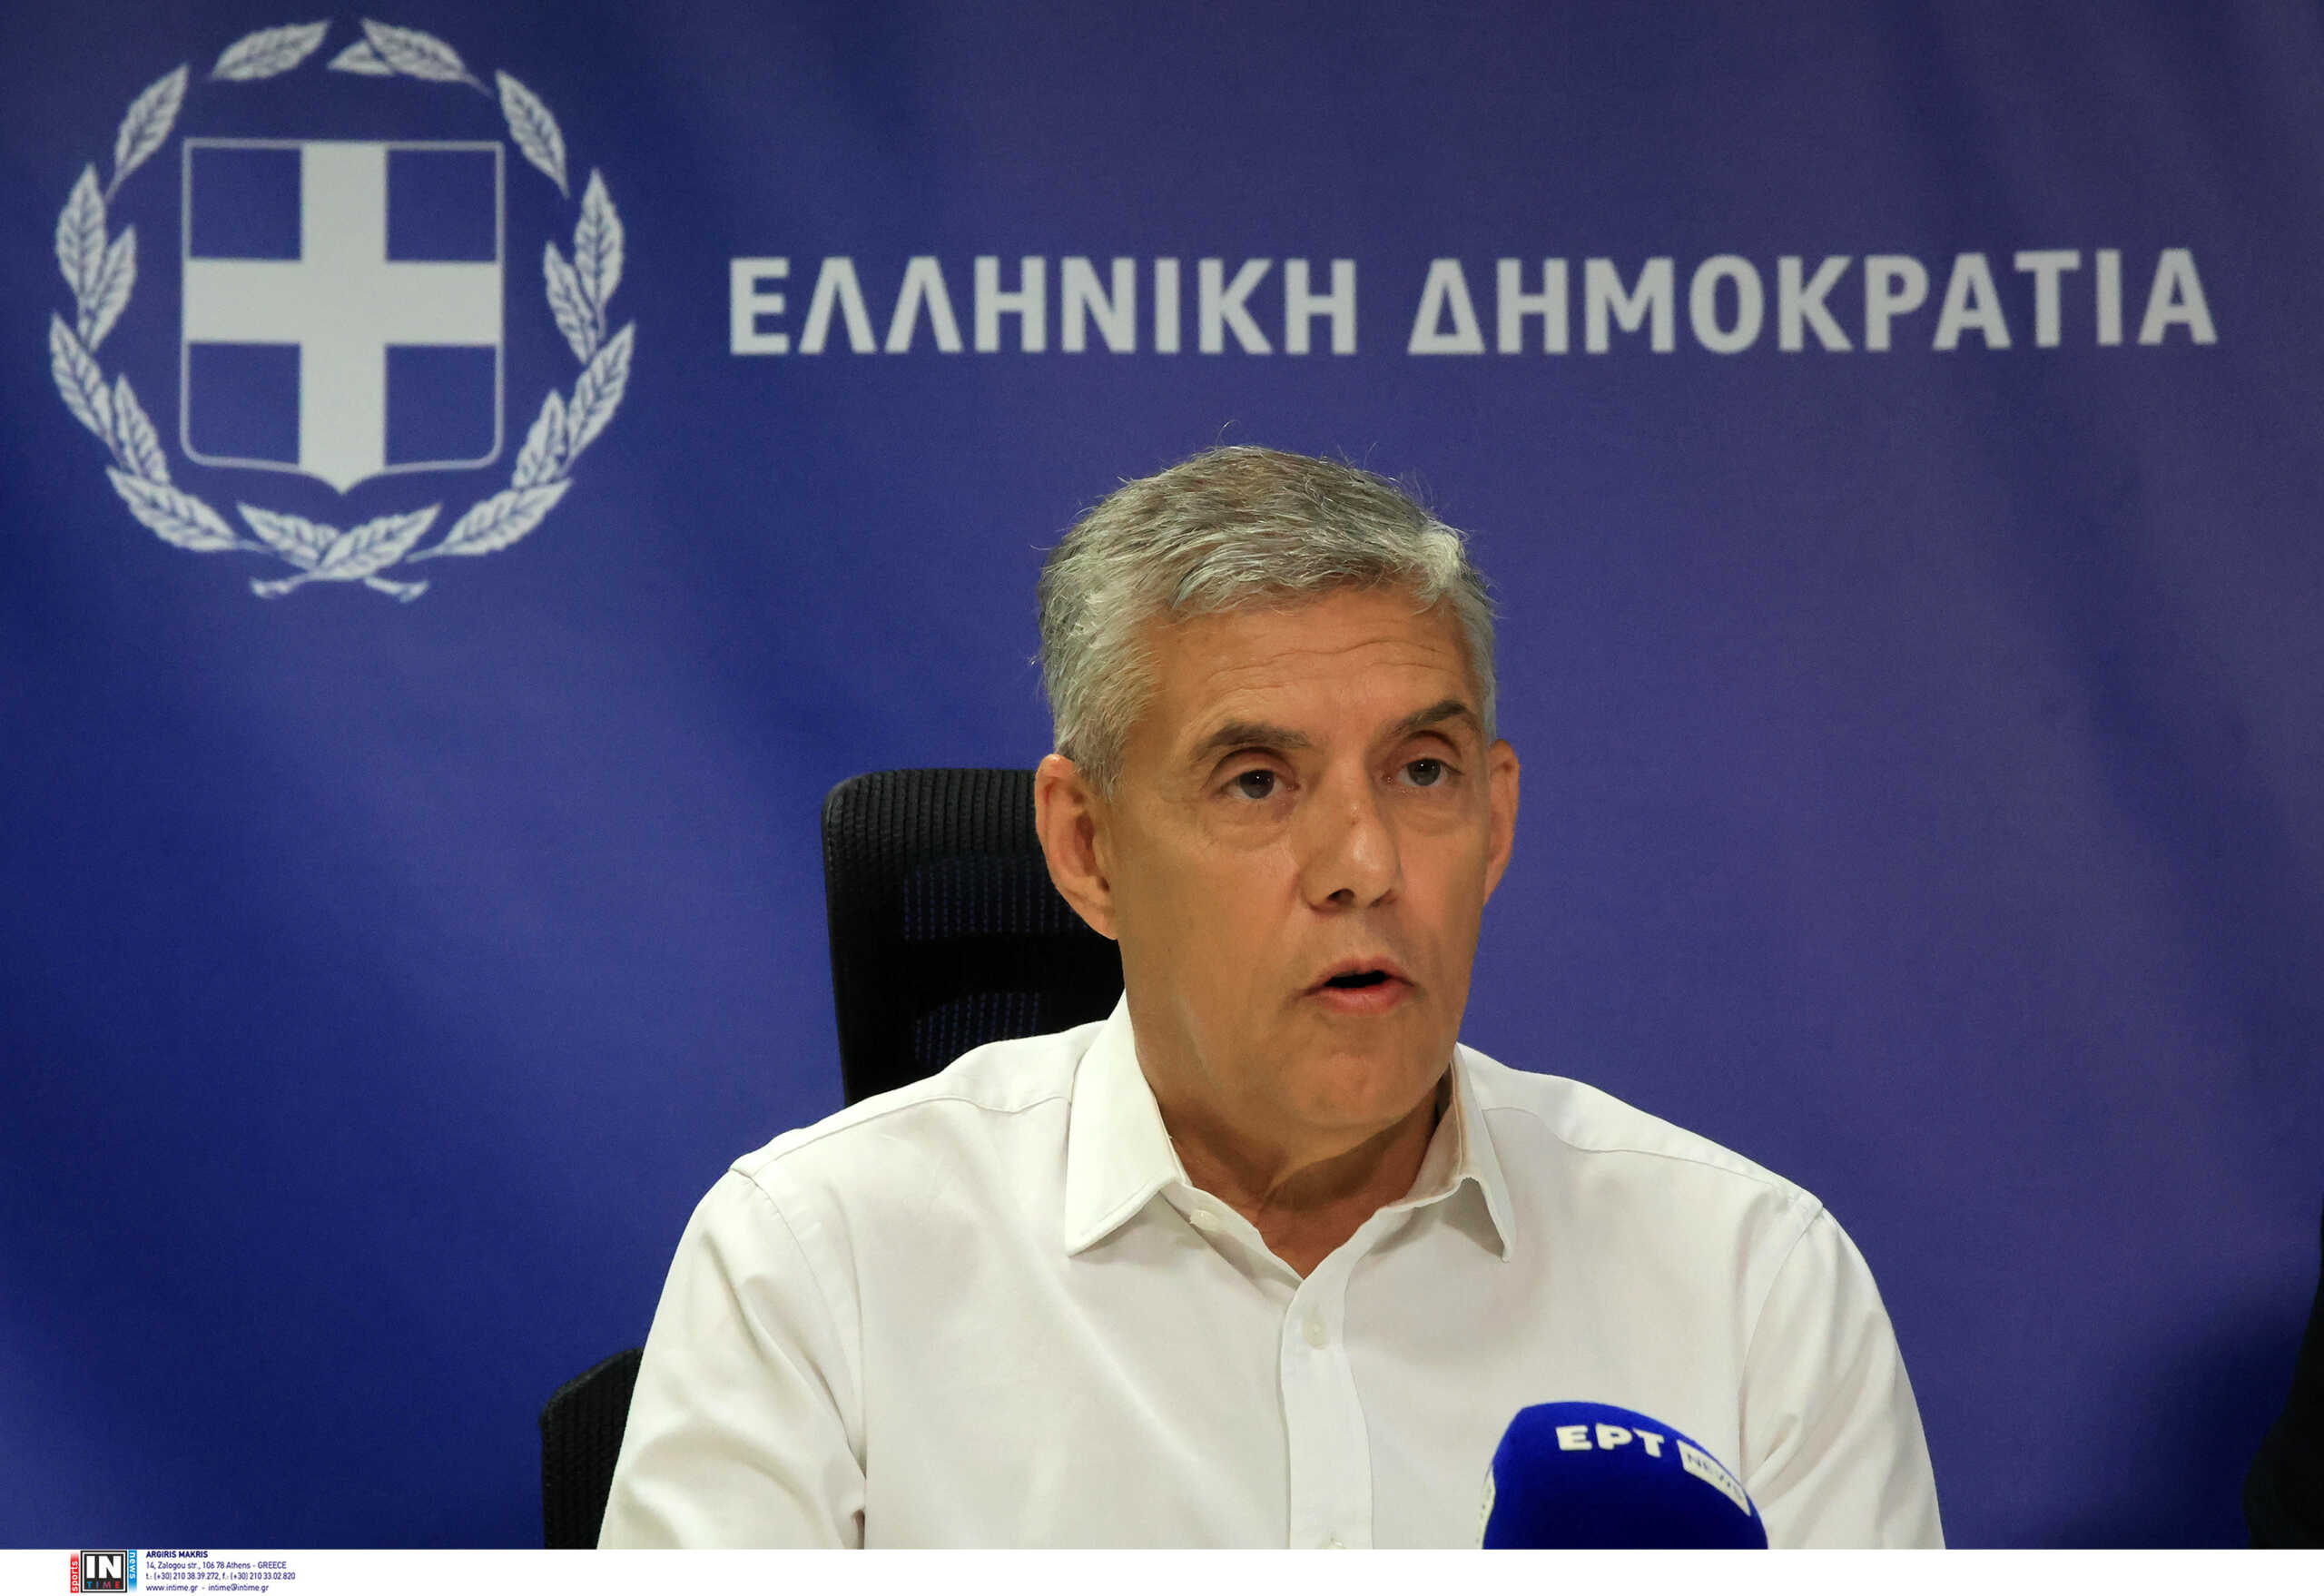 Περιφερειακές εκλογές στη Θεσσαλία – Κώστας Αγοραστός: Ο Δημήτρης Κουρέτας δεν θέλει το debate και κρύβεται